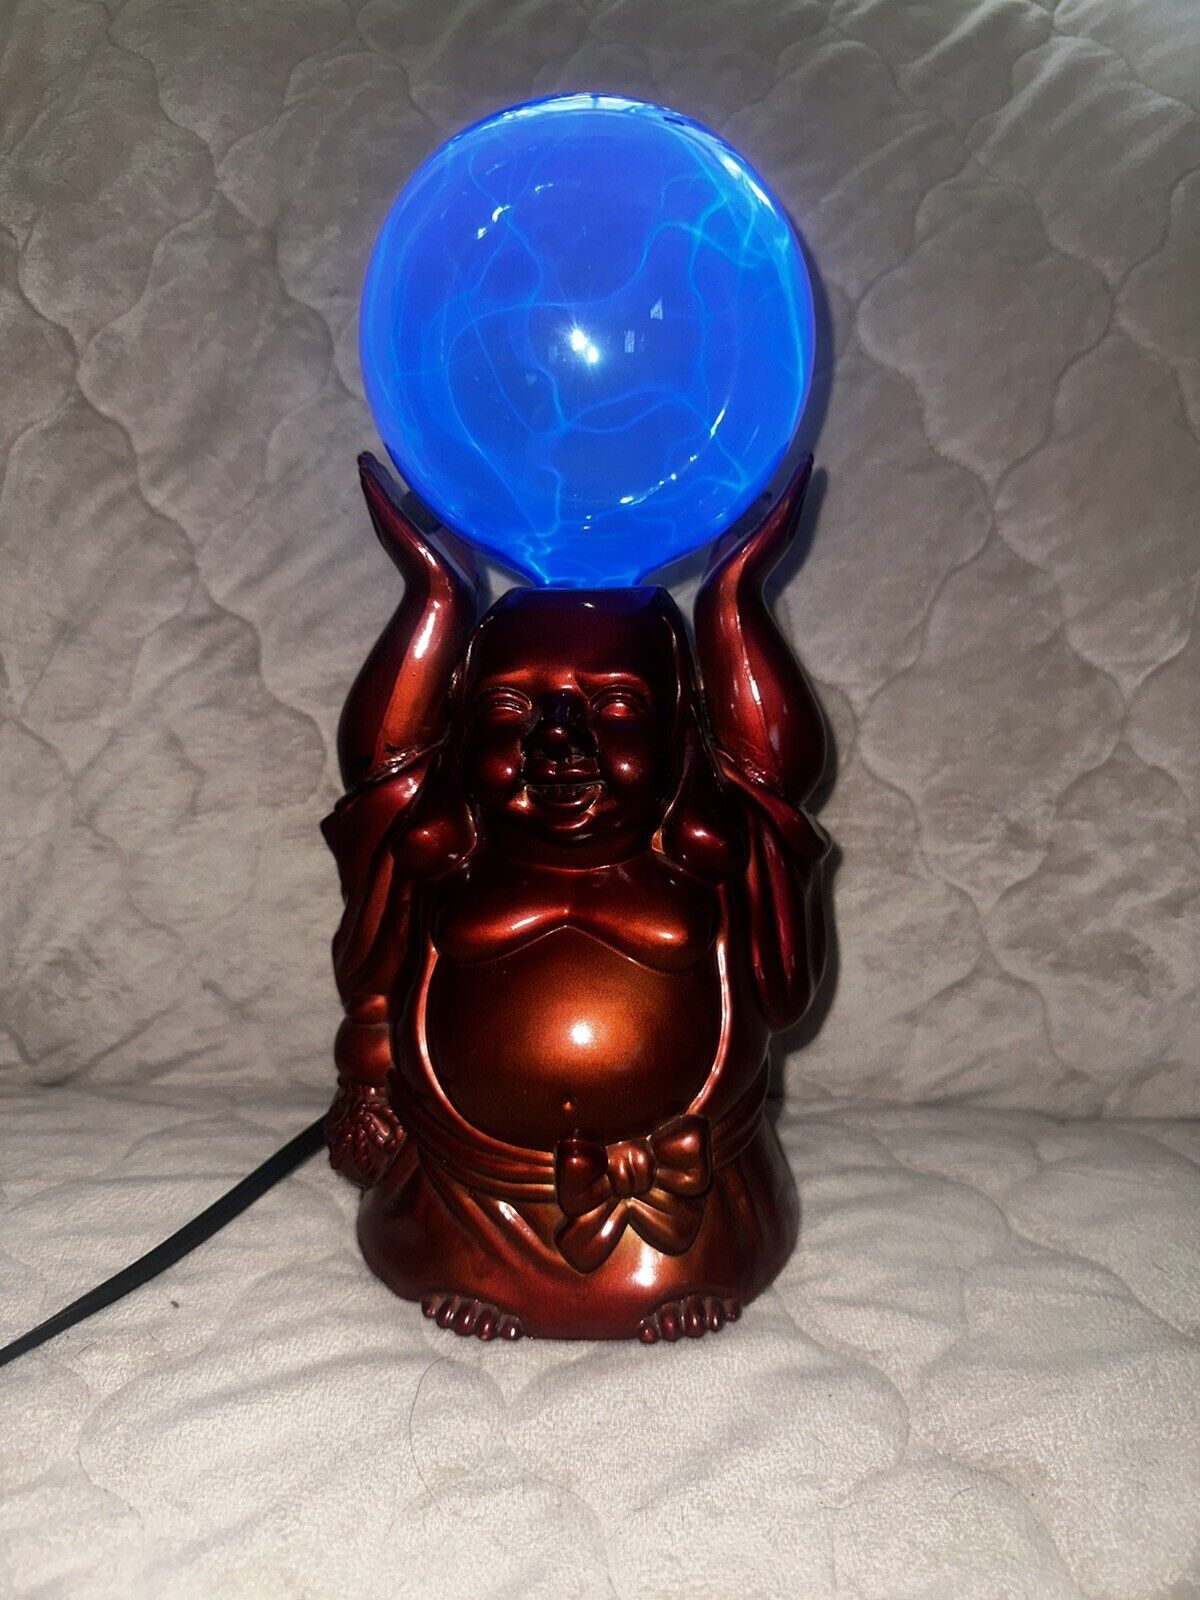 LumiSource Buddha Electra Lamp Tesla Plasma Globe Table Light Spencers Gifts EUC